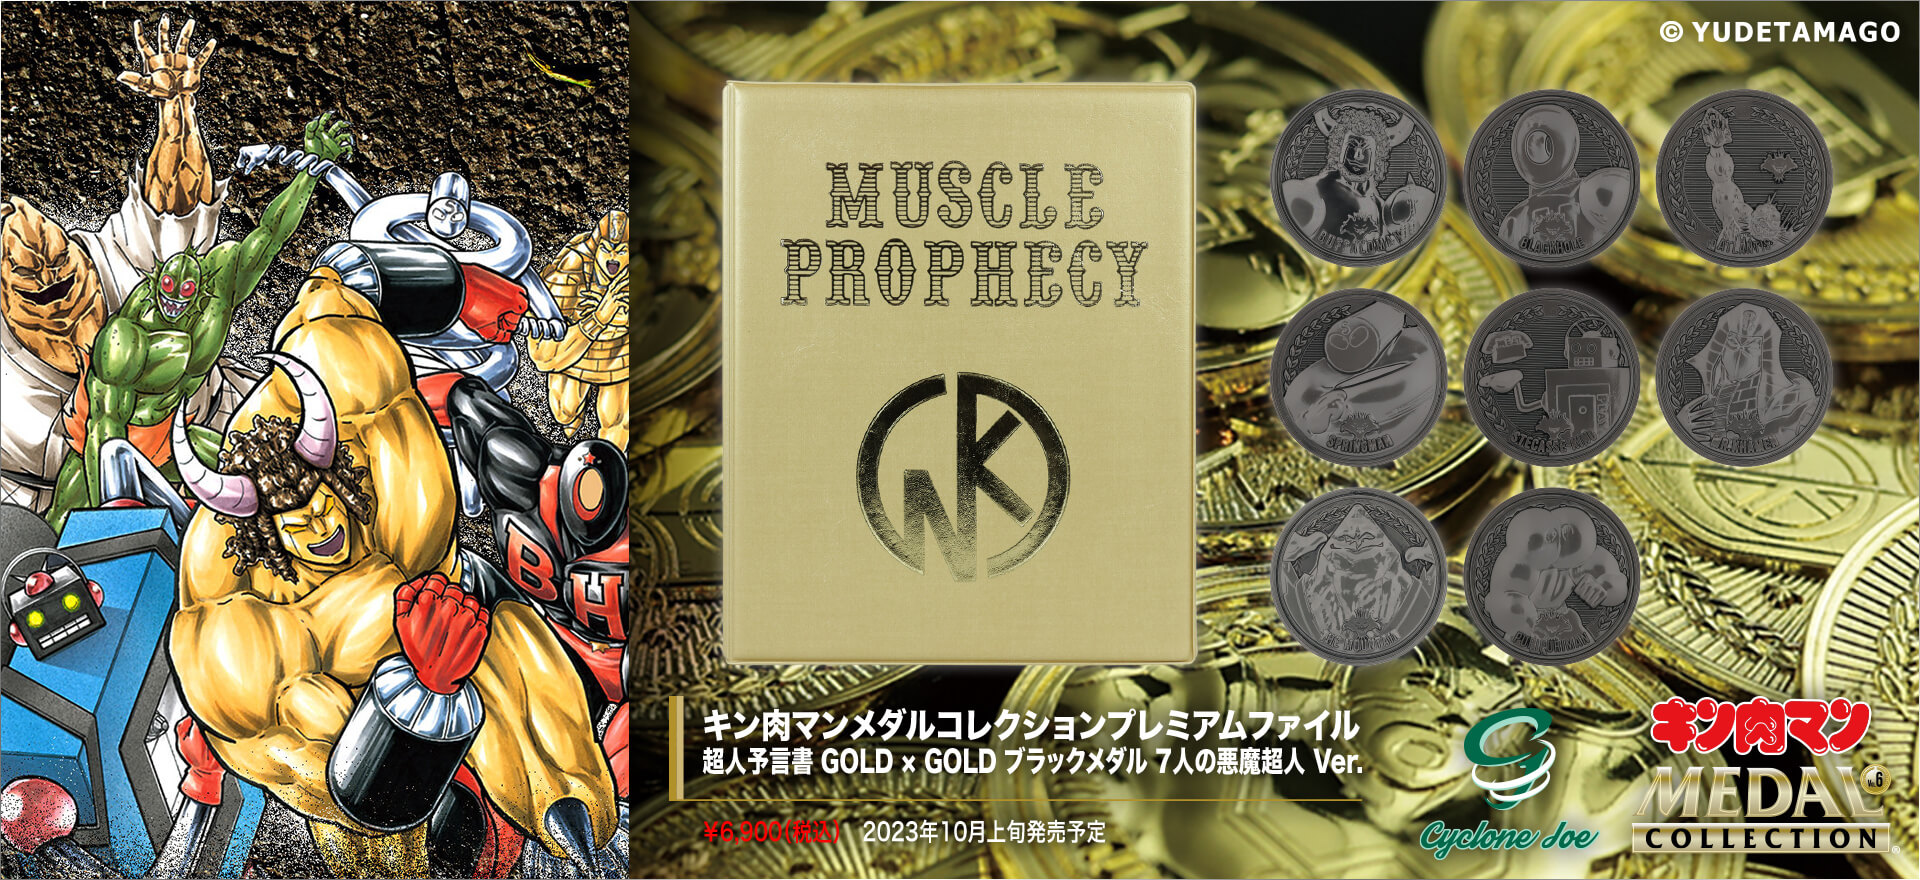 キン肉マンメダルコレクションプレミアムファイル 超人予言書 GOLD × GOLD ブラックメダル 7人の悪魔超人 Ver.